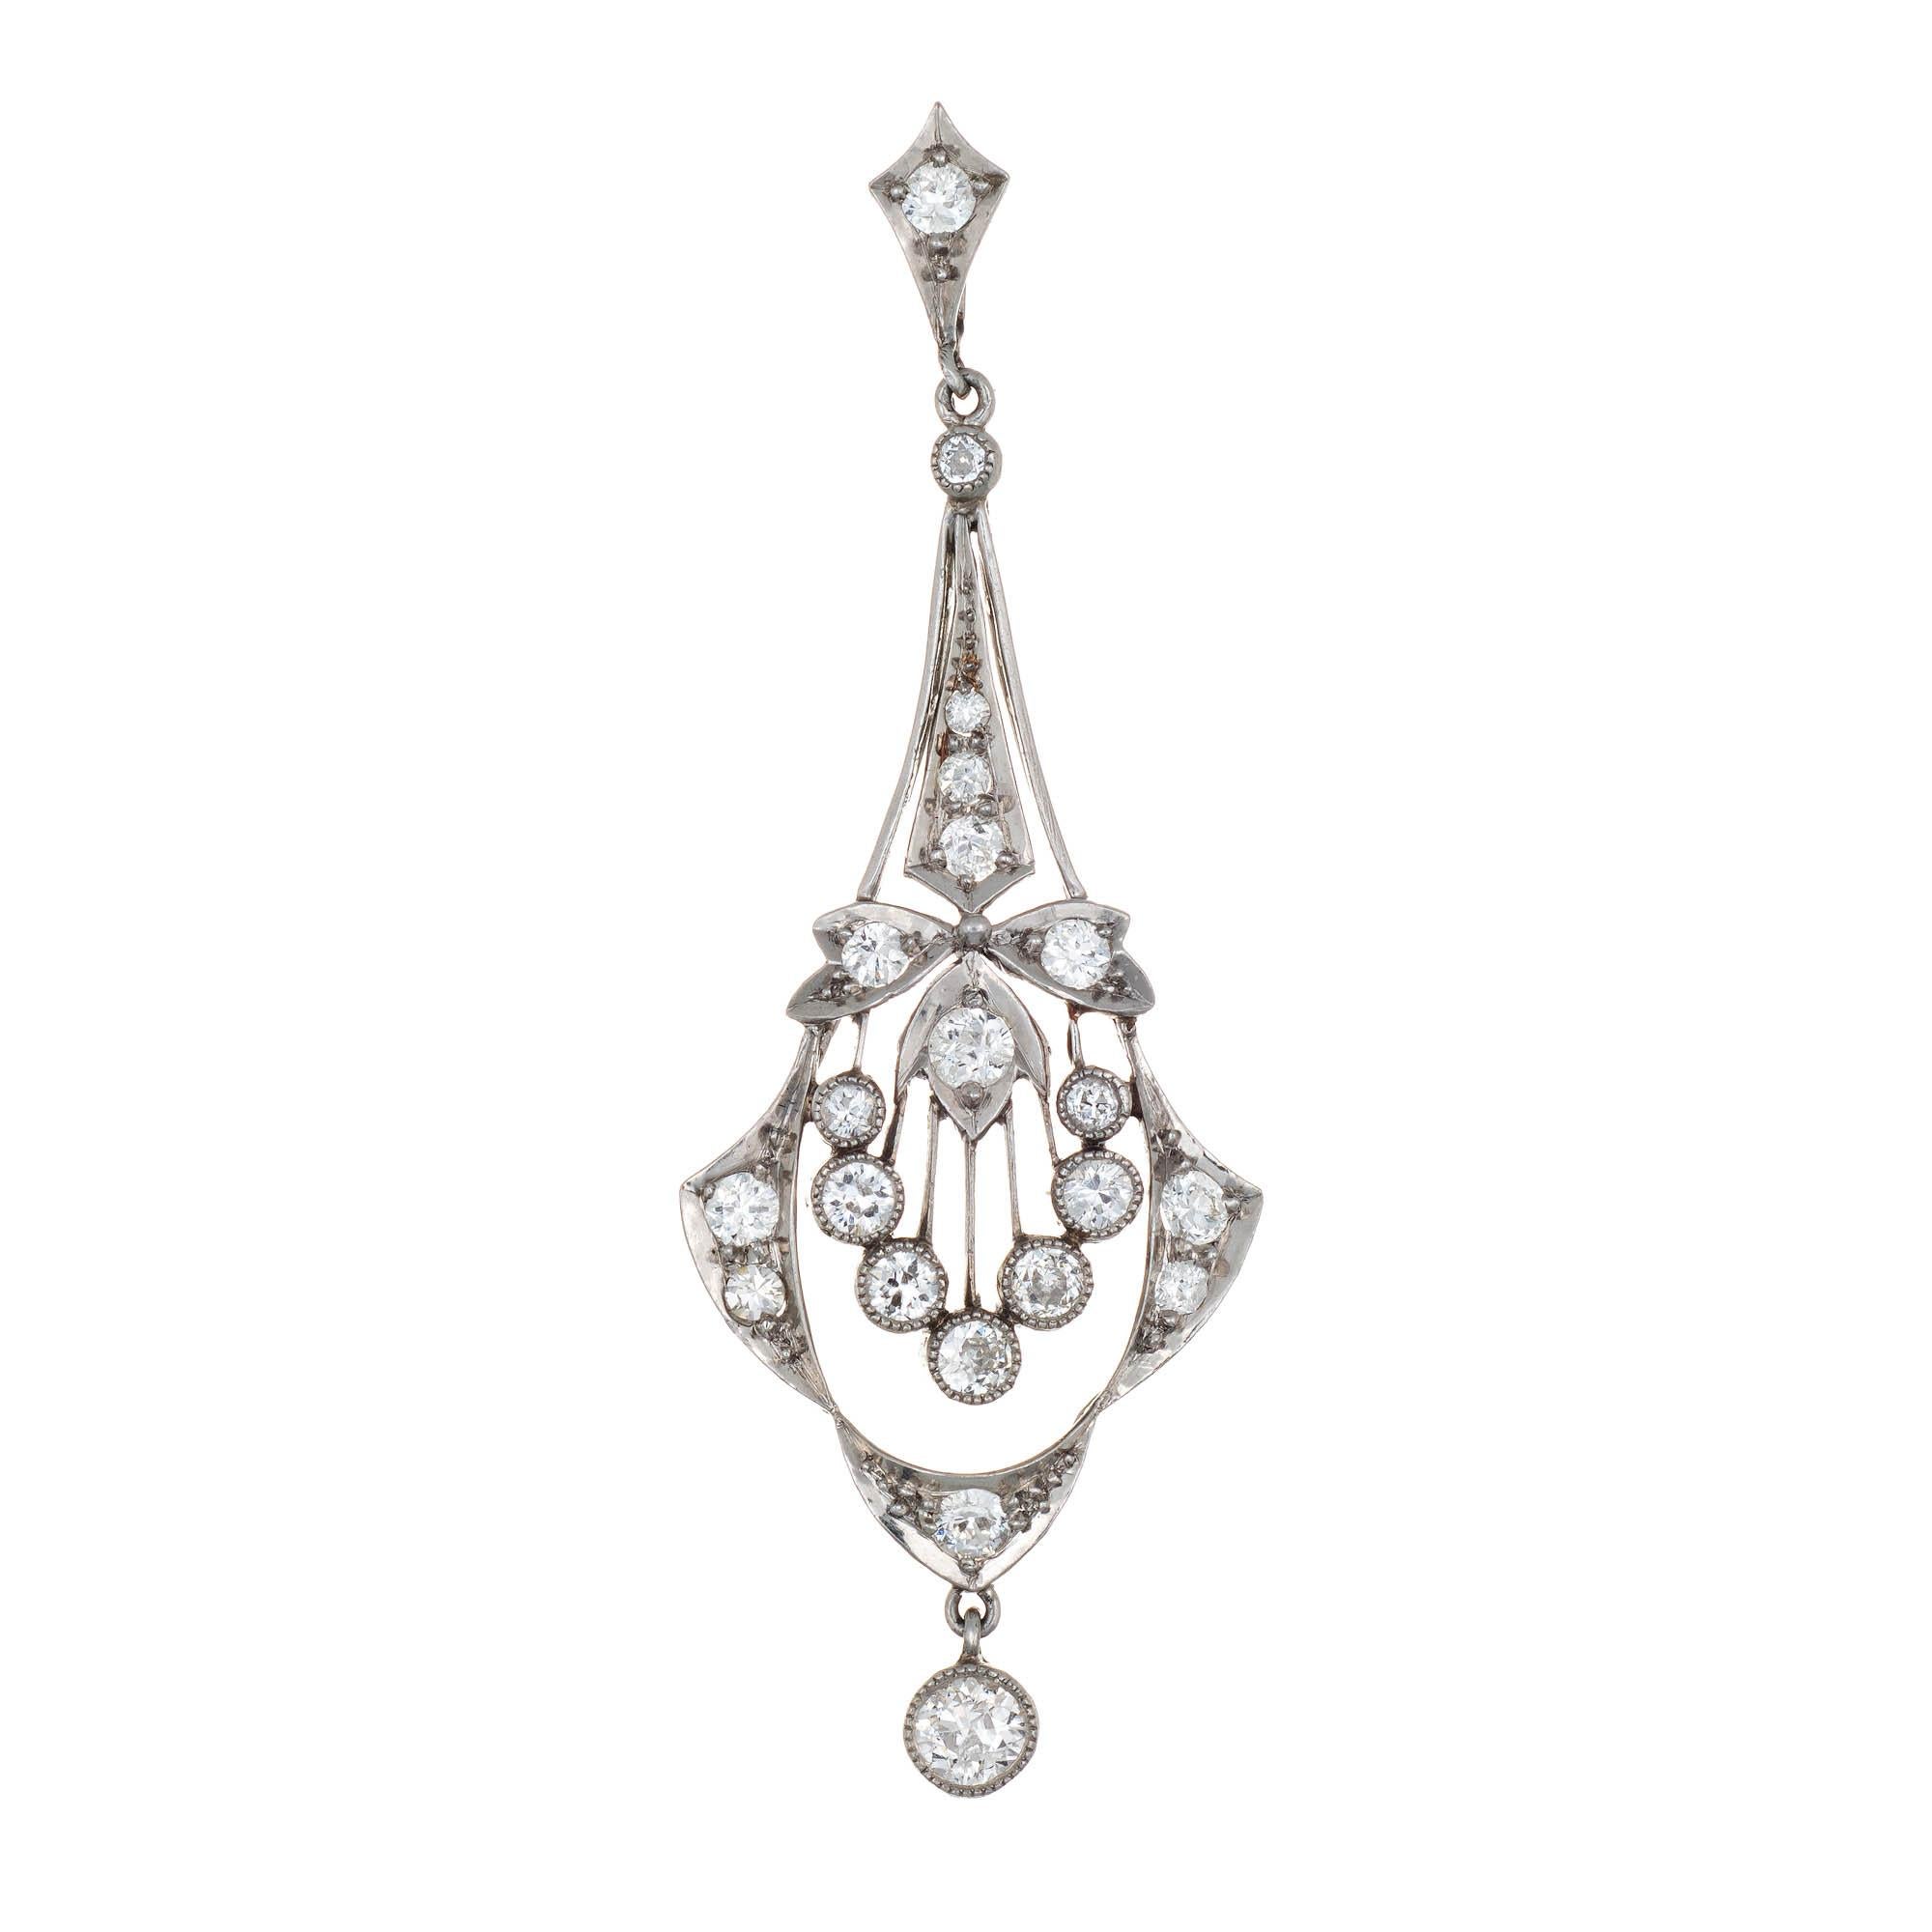 Old European Cut Edwardian 1 Carat Diamond Pendant Vintage Platinum Fine Jewelry Heirloom